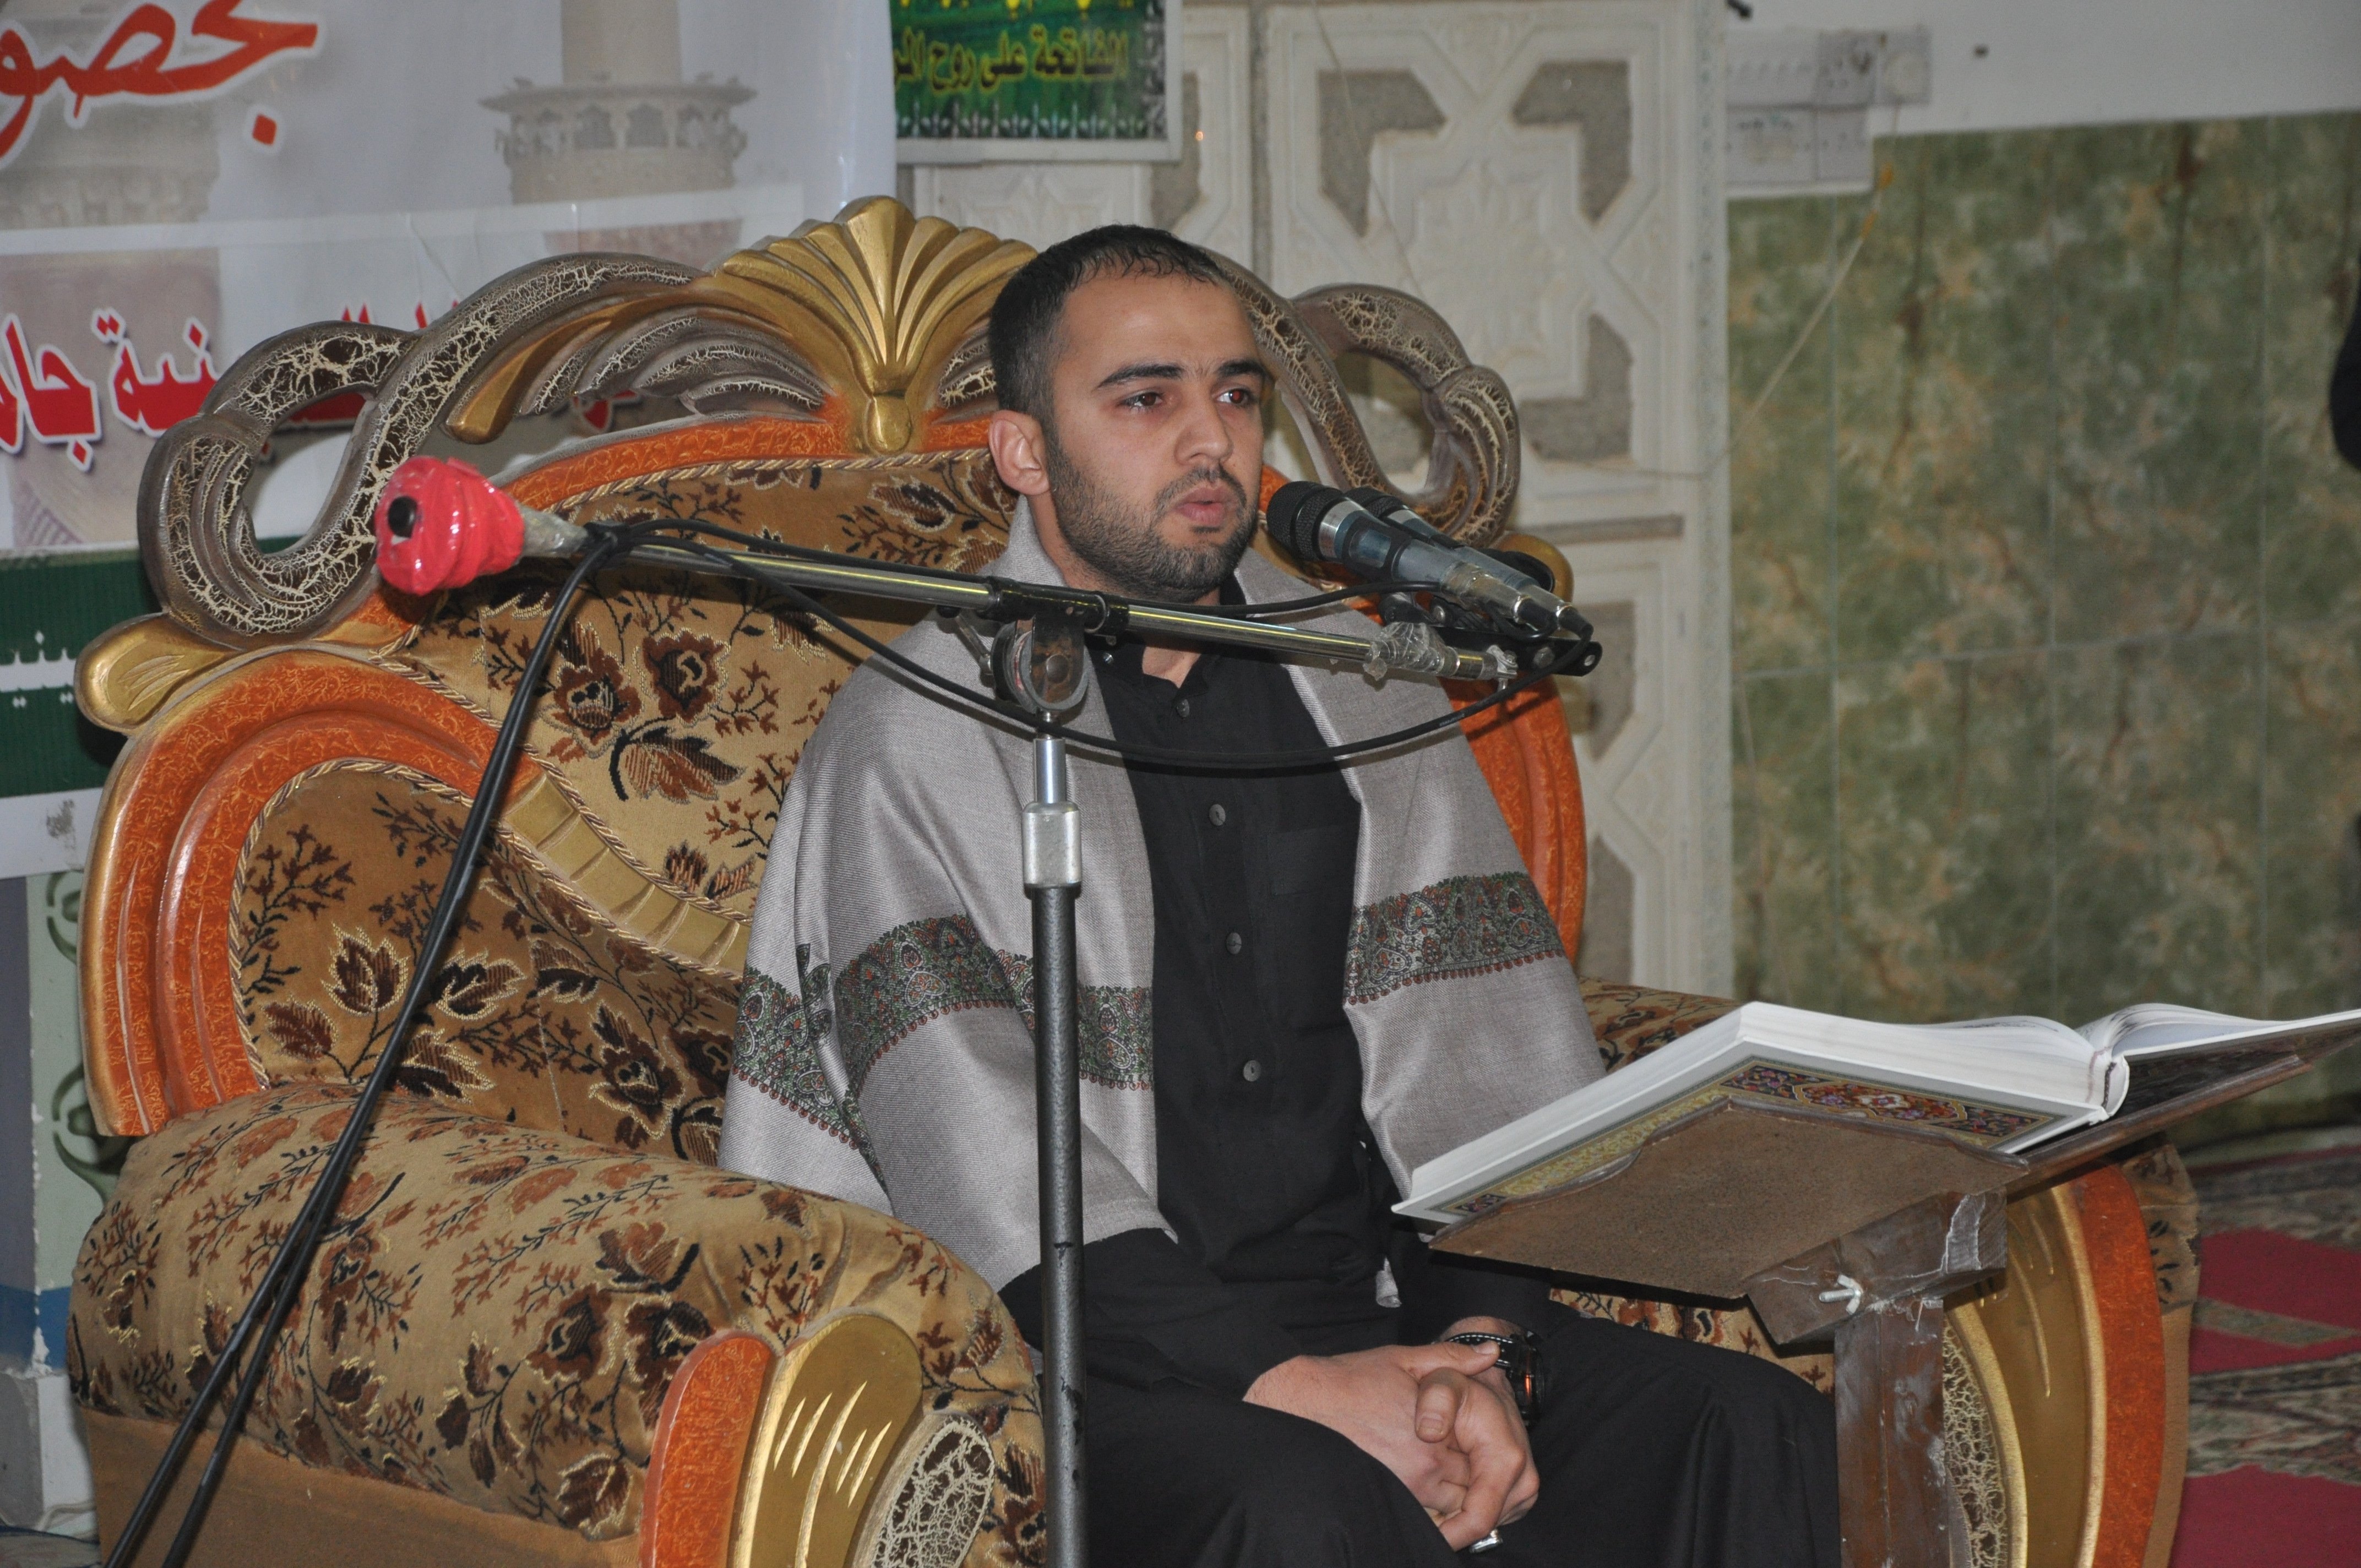 معهد القرآن الكريم فرع بغداد الشَّعب يُقيم محفلاً قرآنيًّا مُباركًا